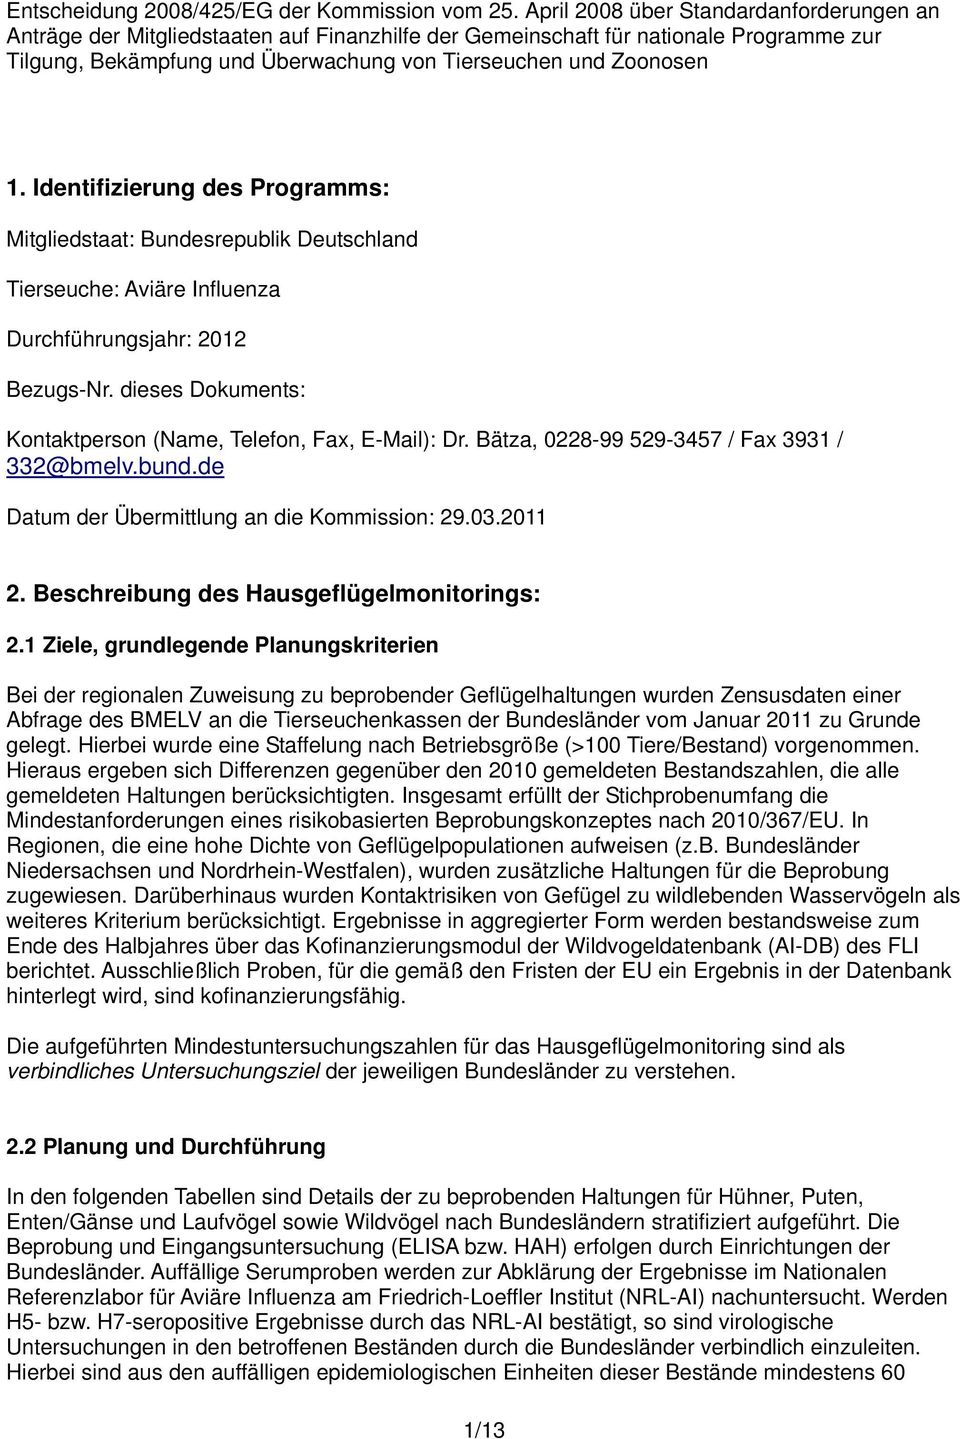 Identifizierung des Programms: Mitgliedstaat: Bundesrepublik Deutschland Tierseuche: Aviäre Influenza Durchführungsjahr: 2012 Bezugs-Nr.